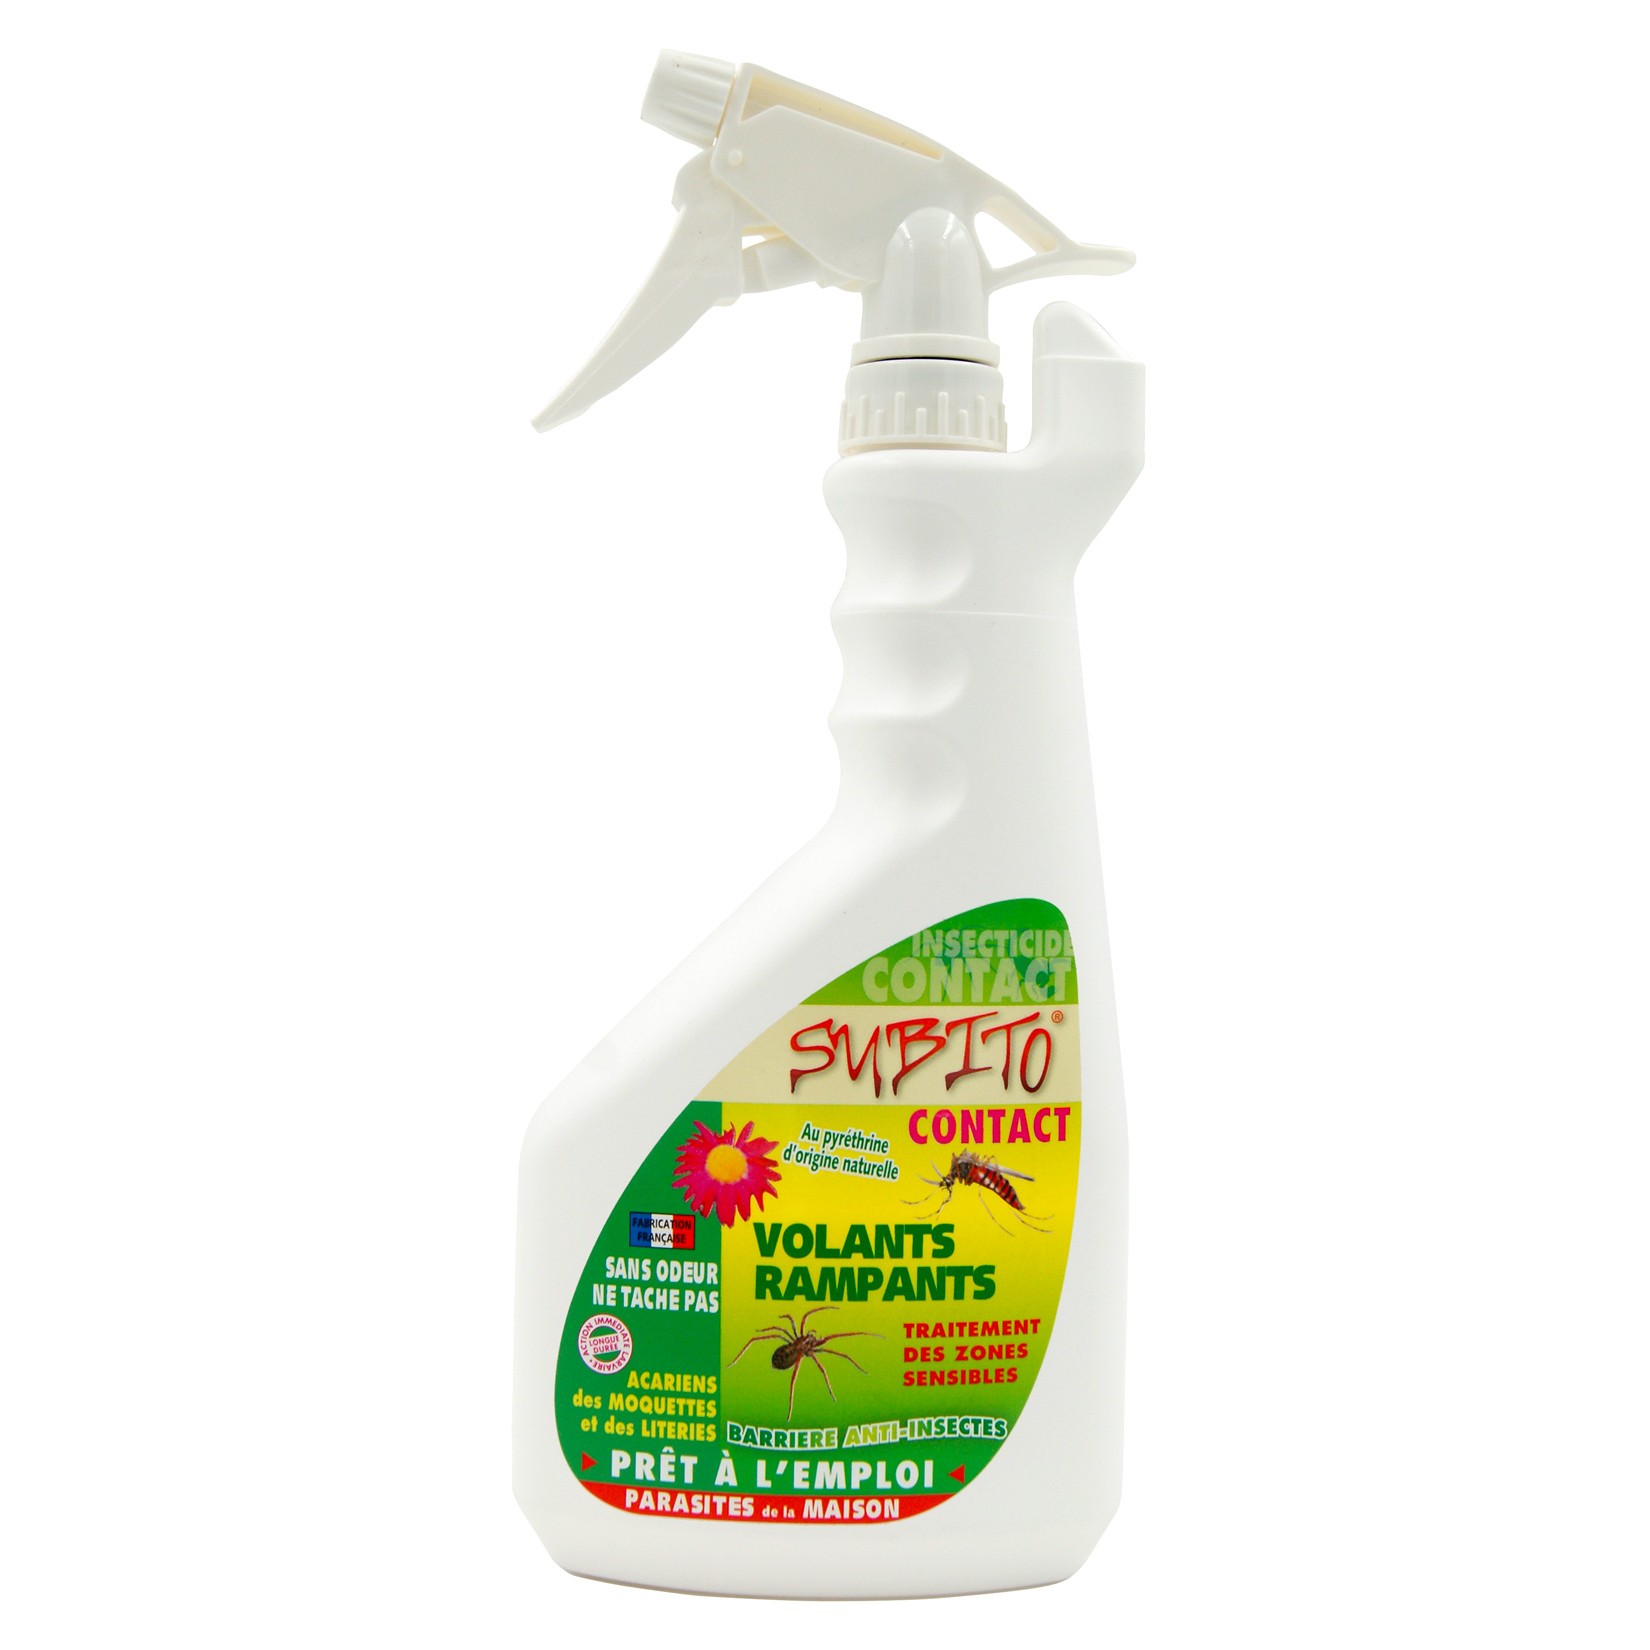 Contact barriere anti-insectes volants et rampants 750 ml de Subito | Insecticide Antinuisible Qualité Professionnelle